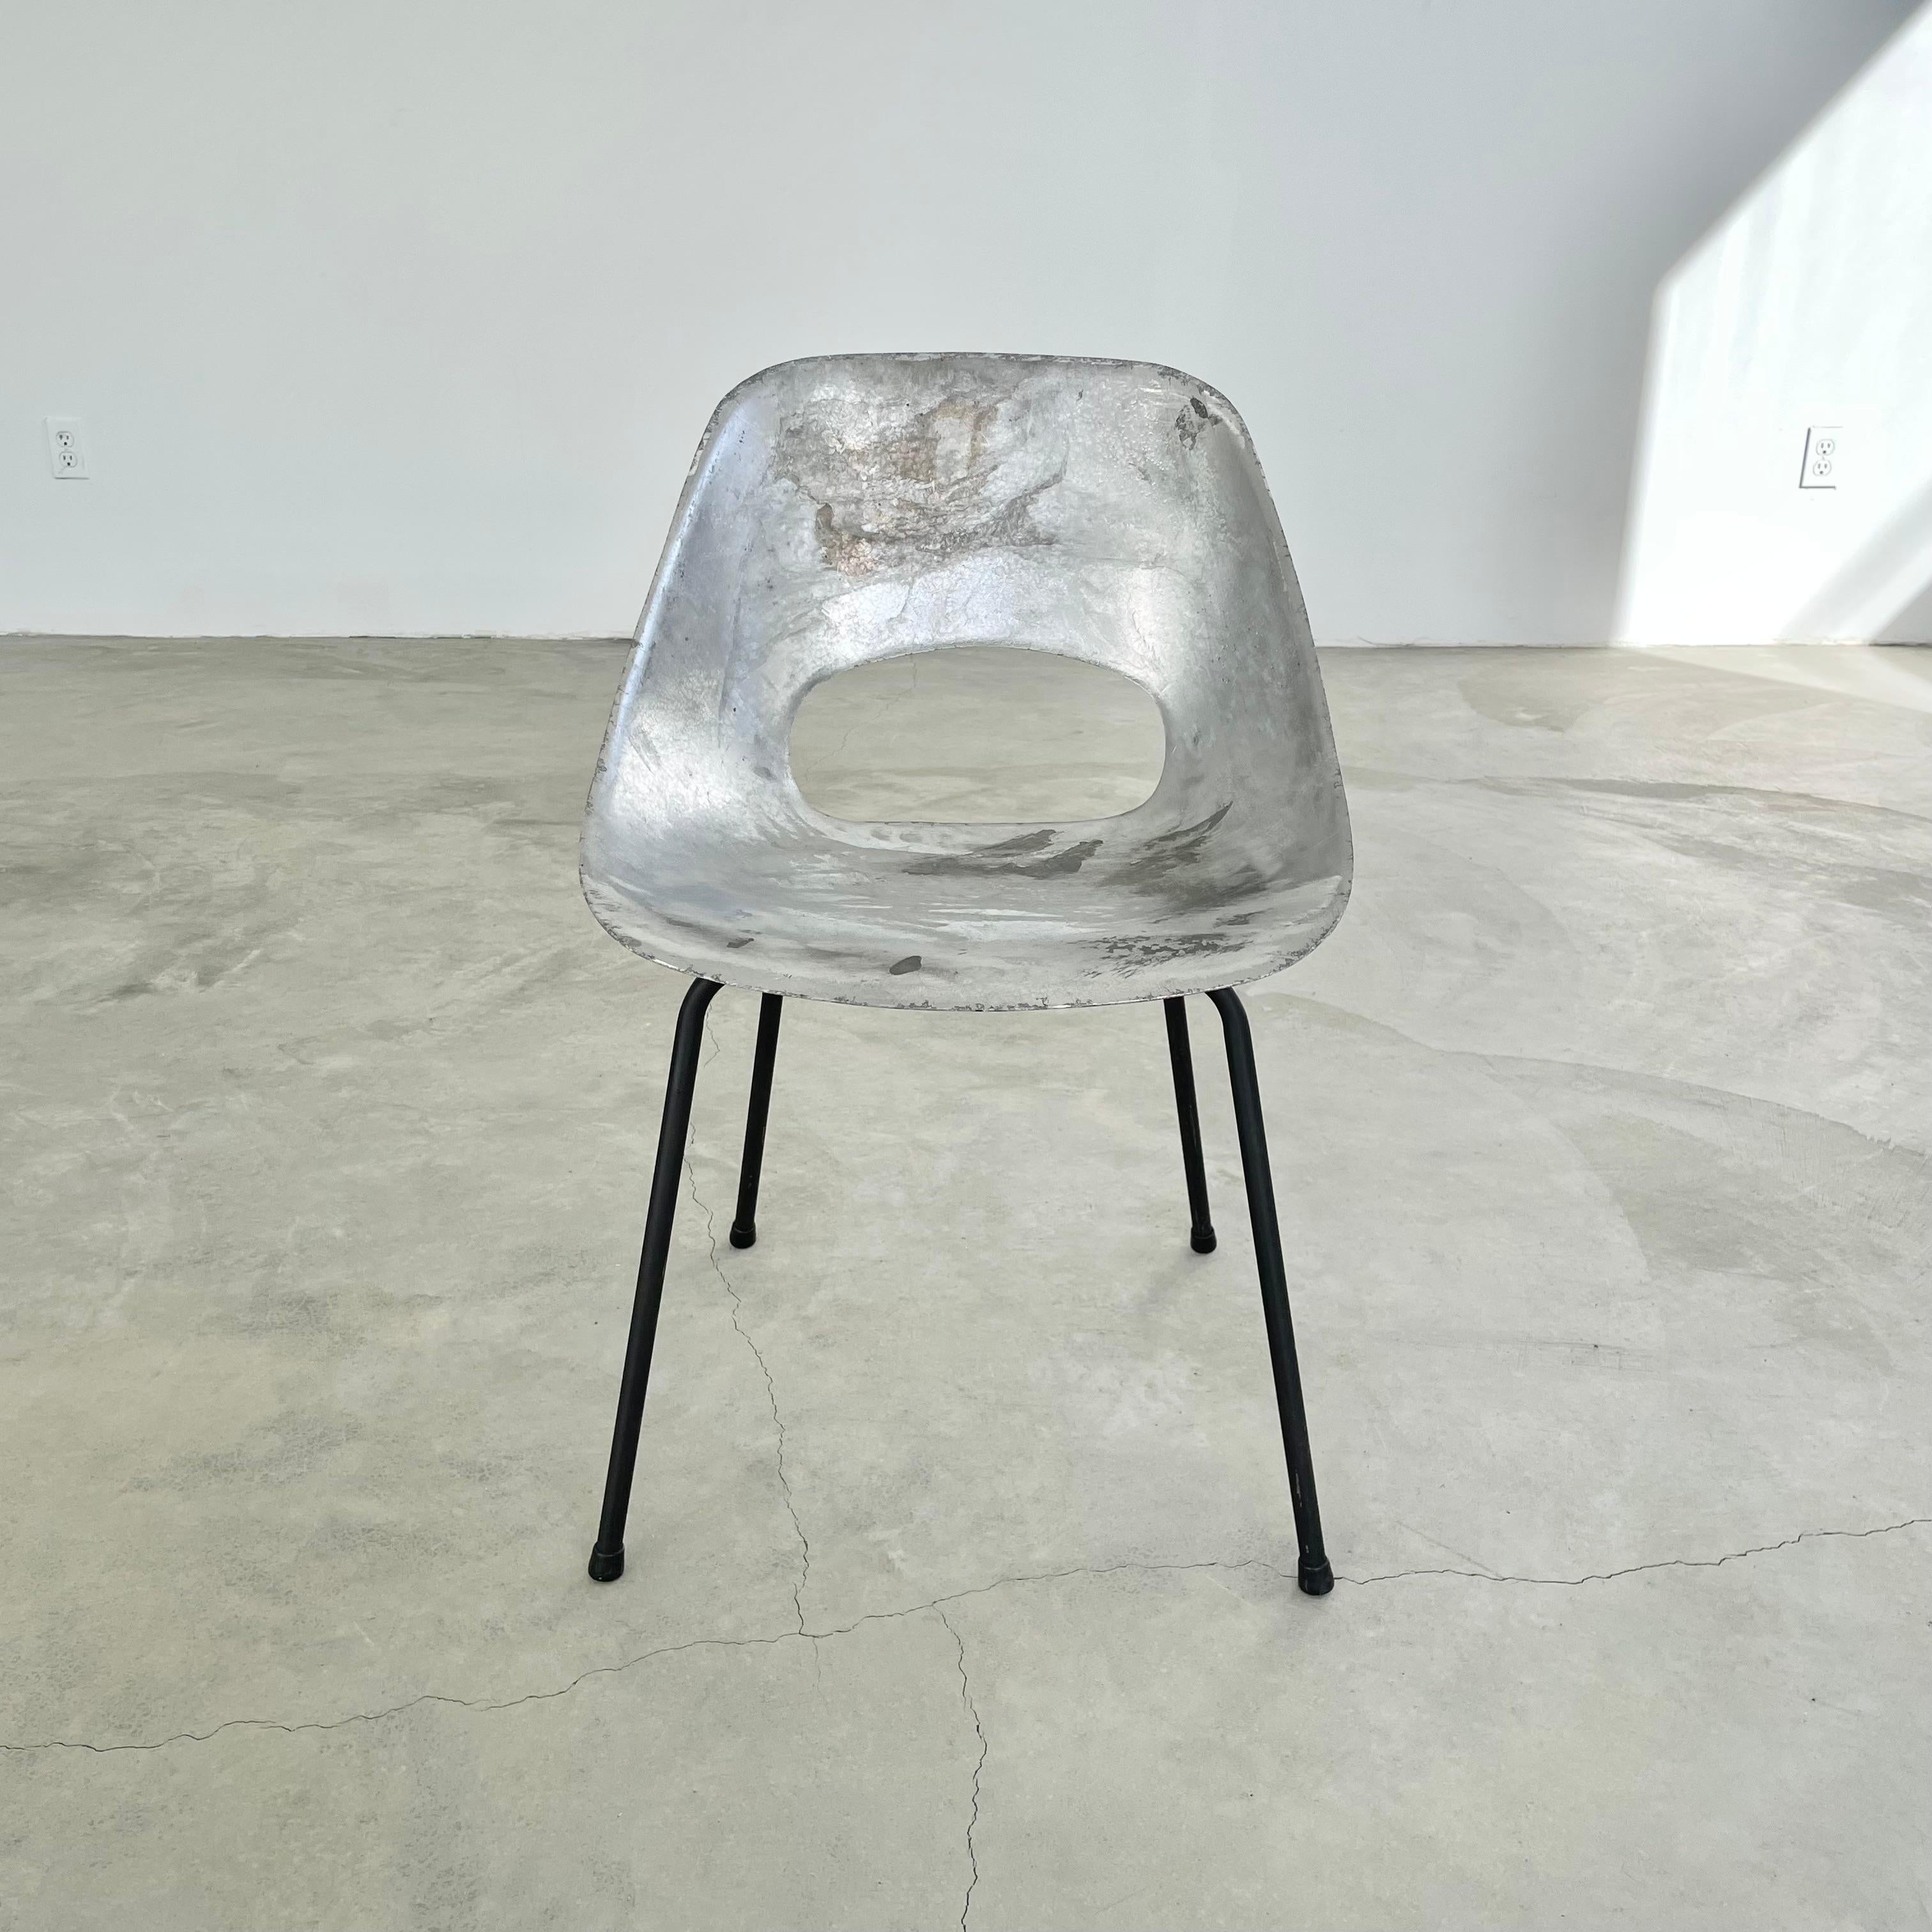 Wunderschöne Aluminiumstühle von Pierre Guariche. Der Rahmen aus Aluminiumguss steht auf vier Eisenbeinen. Toller Vintage-Zustand und schön minimalistisches Design. Äußerst selten. Die unkonventionelle Schönheit dieser Stühle macht sie zu einem